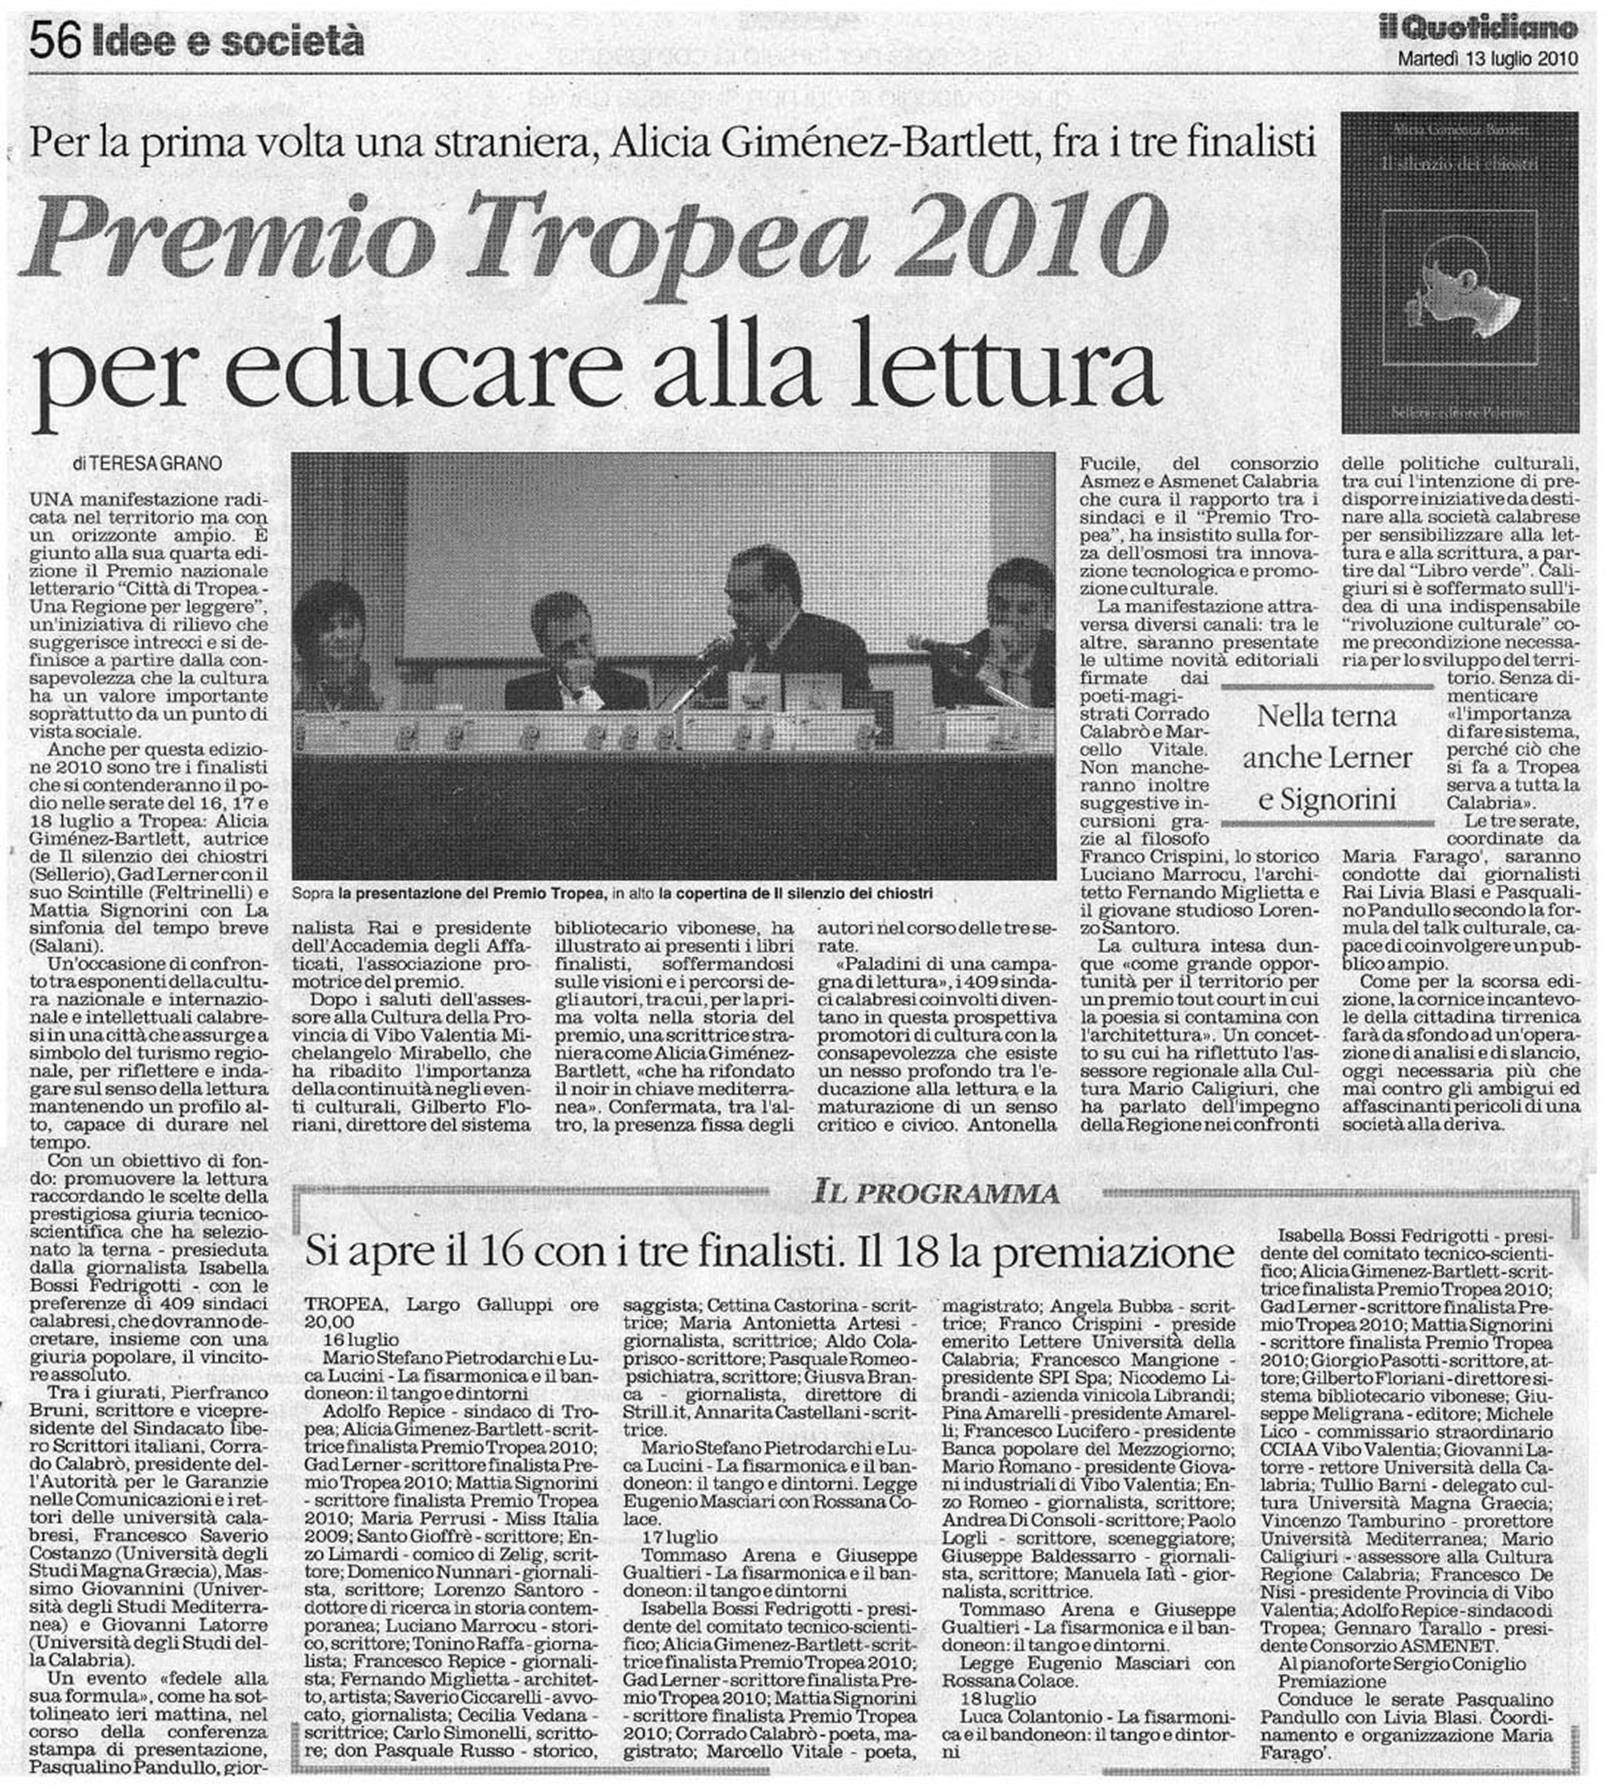 13.07.10_il Quotidiano della Calabria.jpg